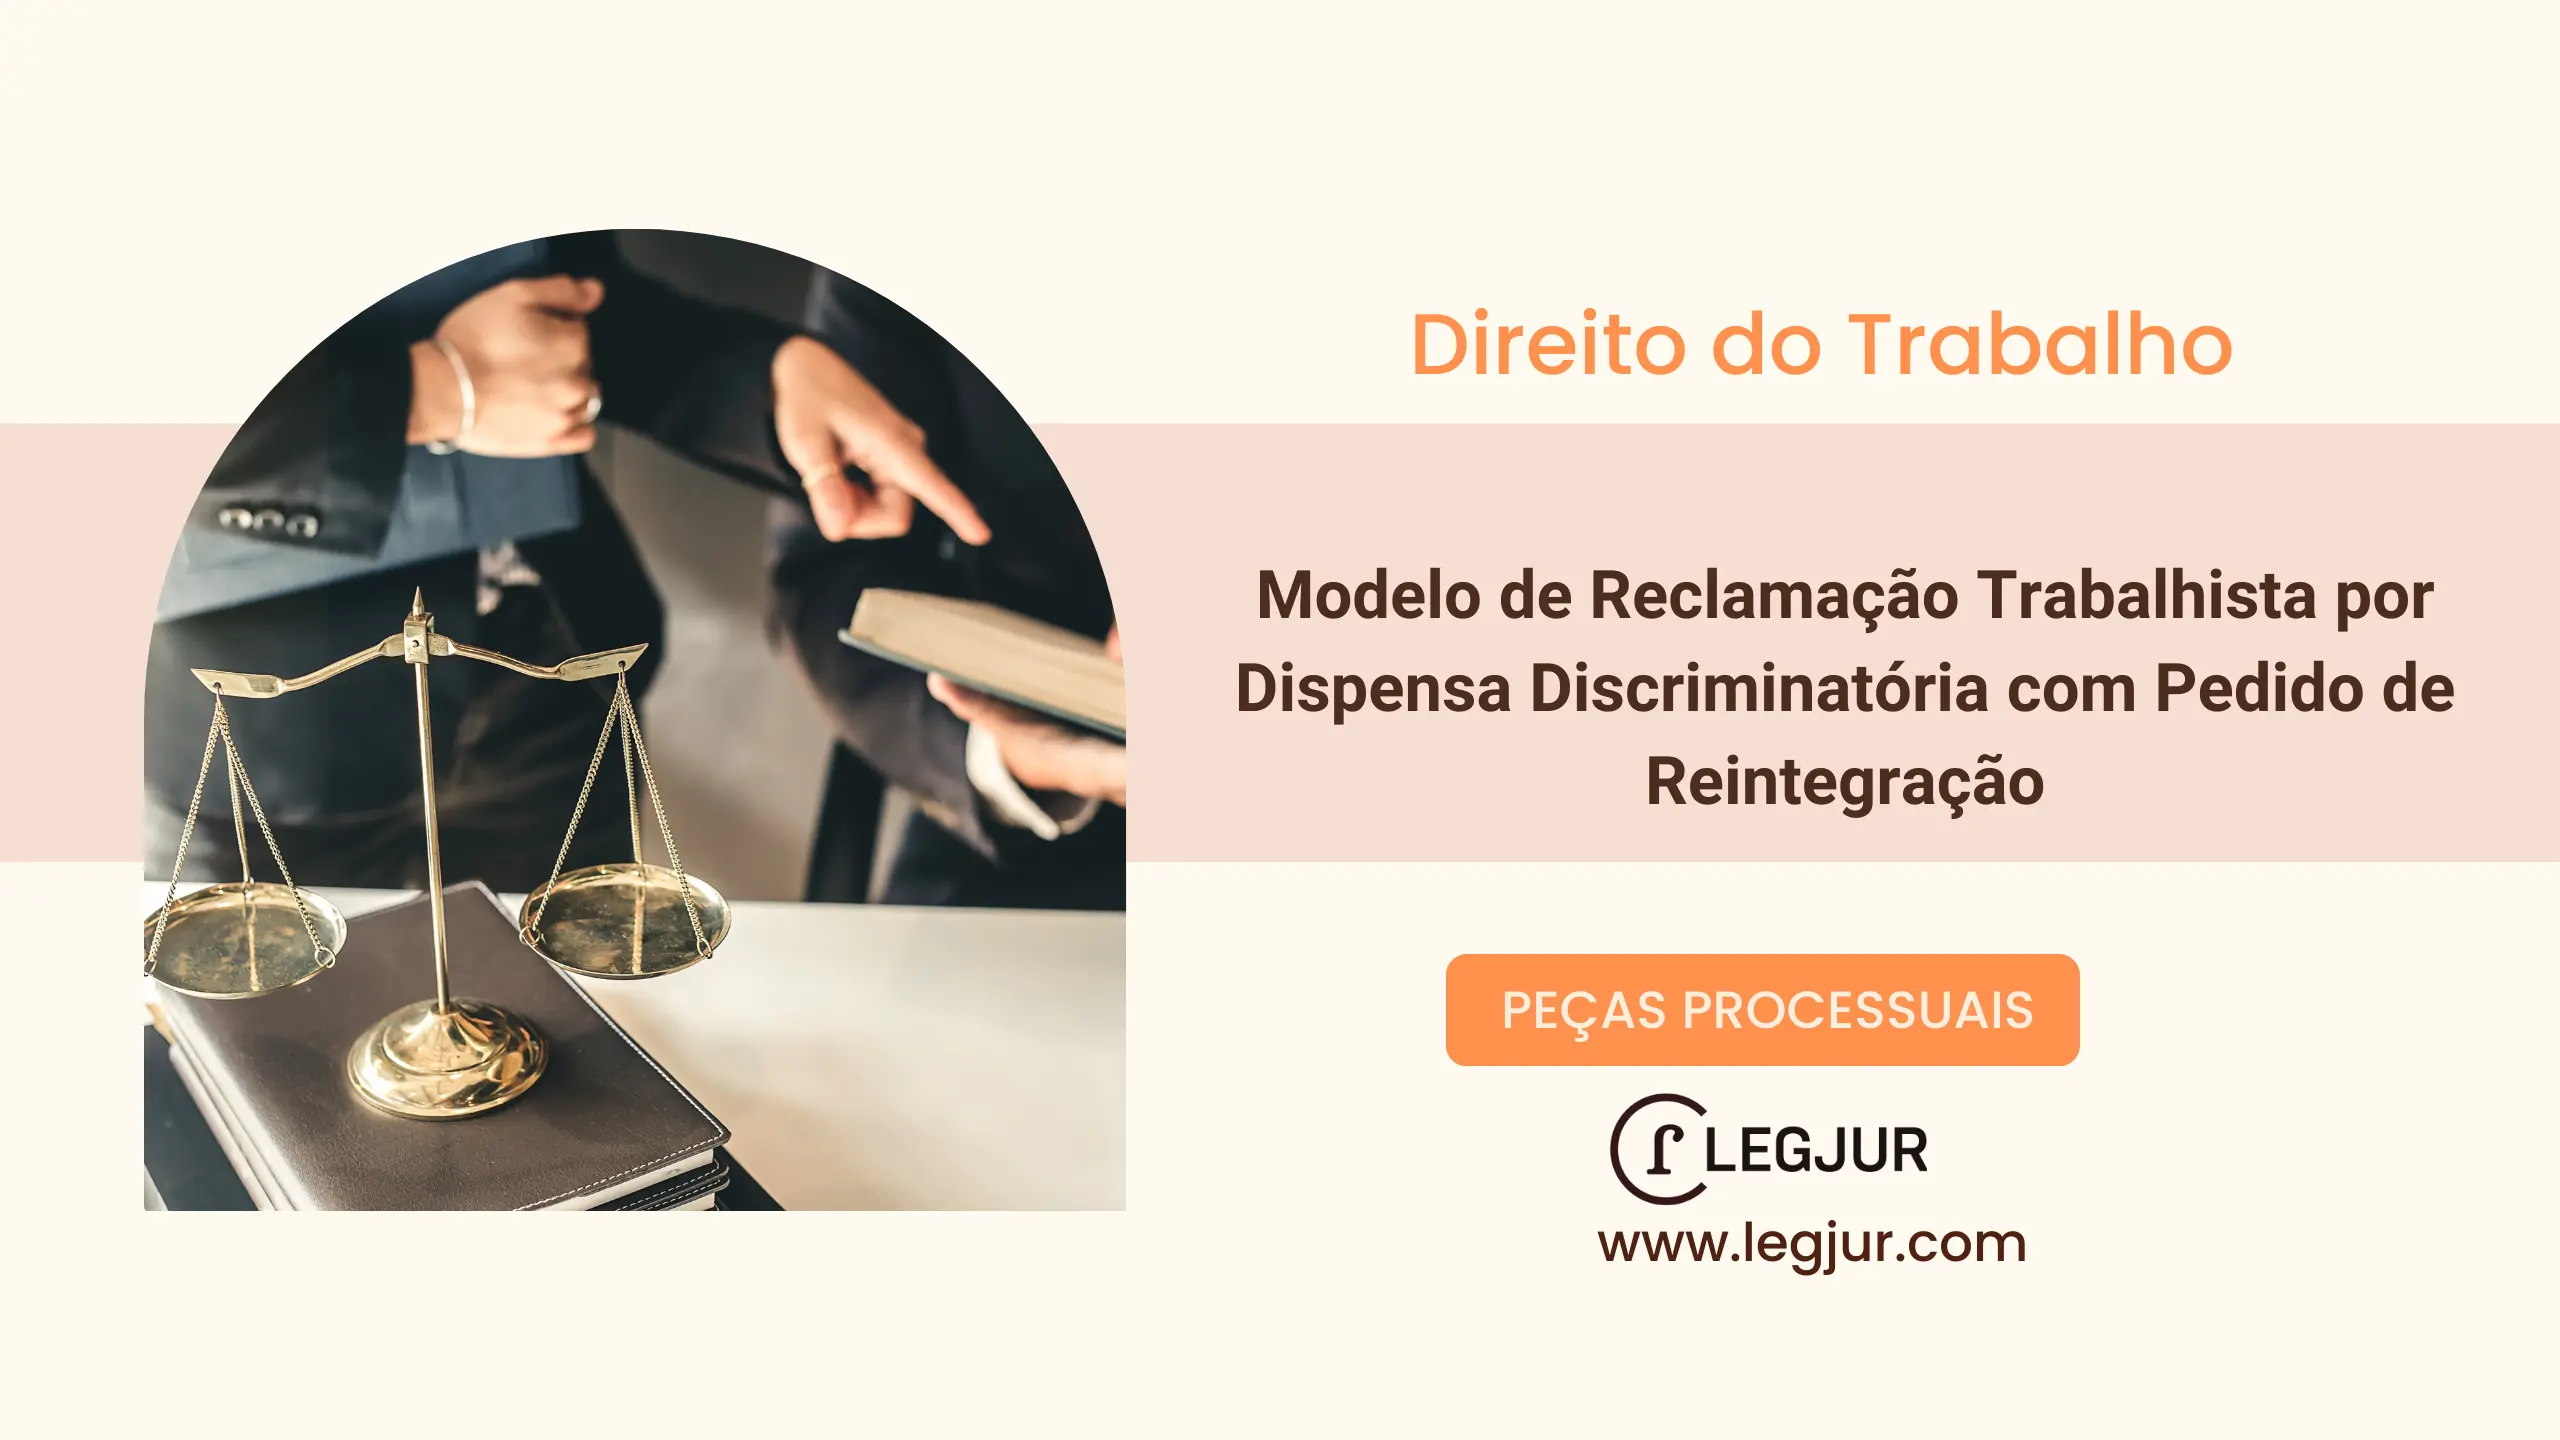 Modelo de Reclamação Trabalhista por Dispensa Discriminatória com Pedido de Reintegração